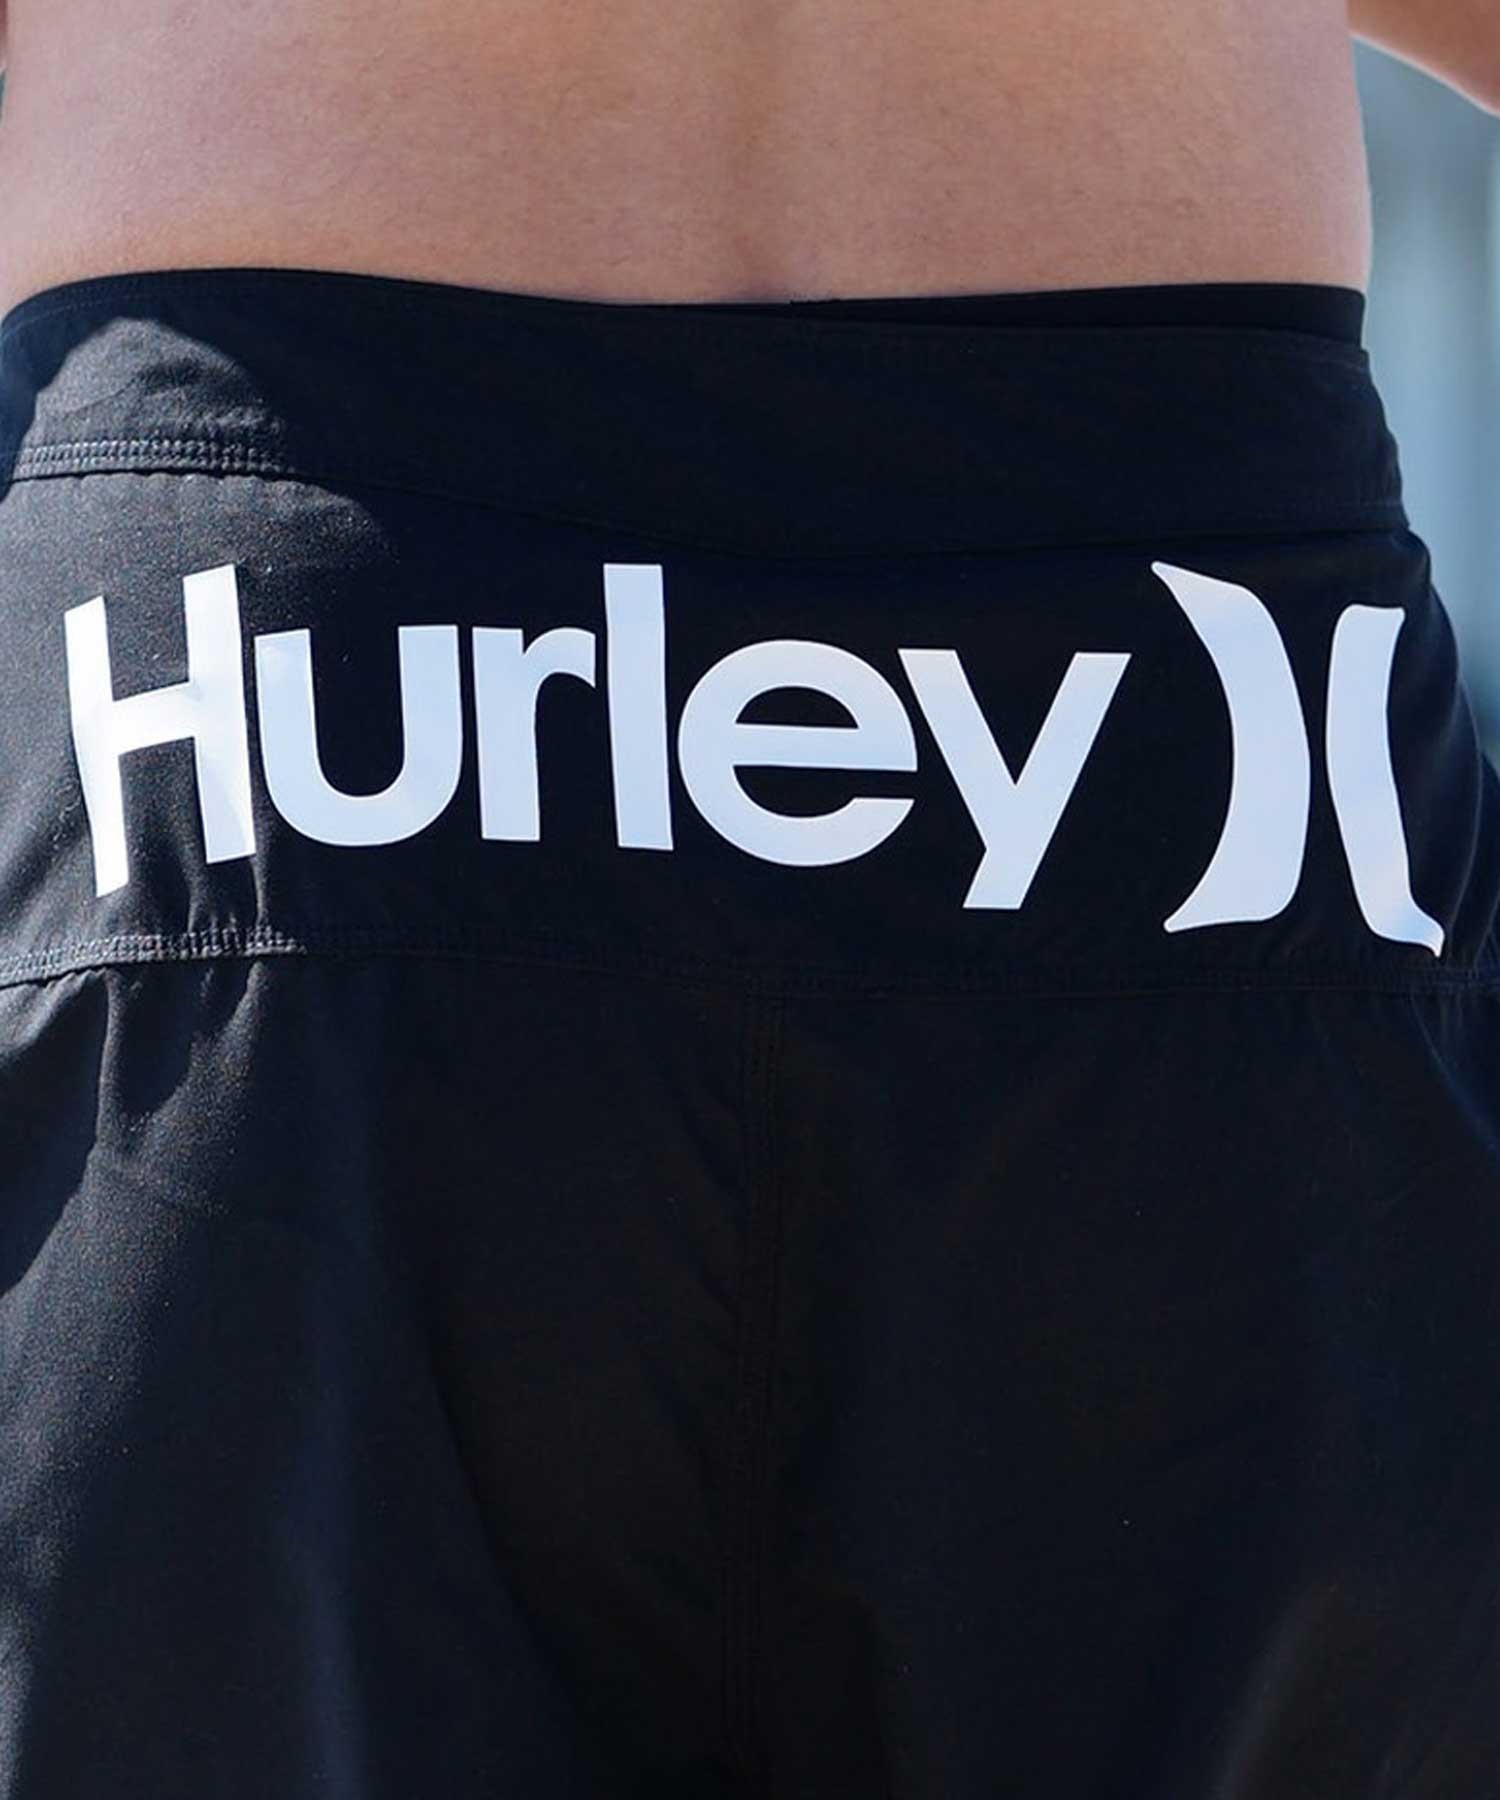 Hurley ハーレー メンズ ボードショーツ サーフトランクス 19インチ USモデル 速乾 水着 MBS0012190(H010-28.0inch)